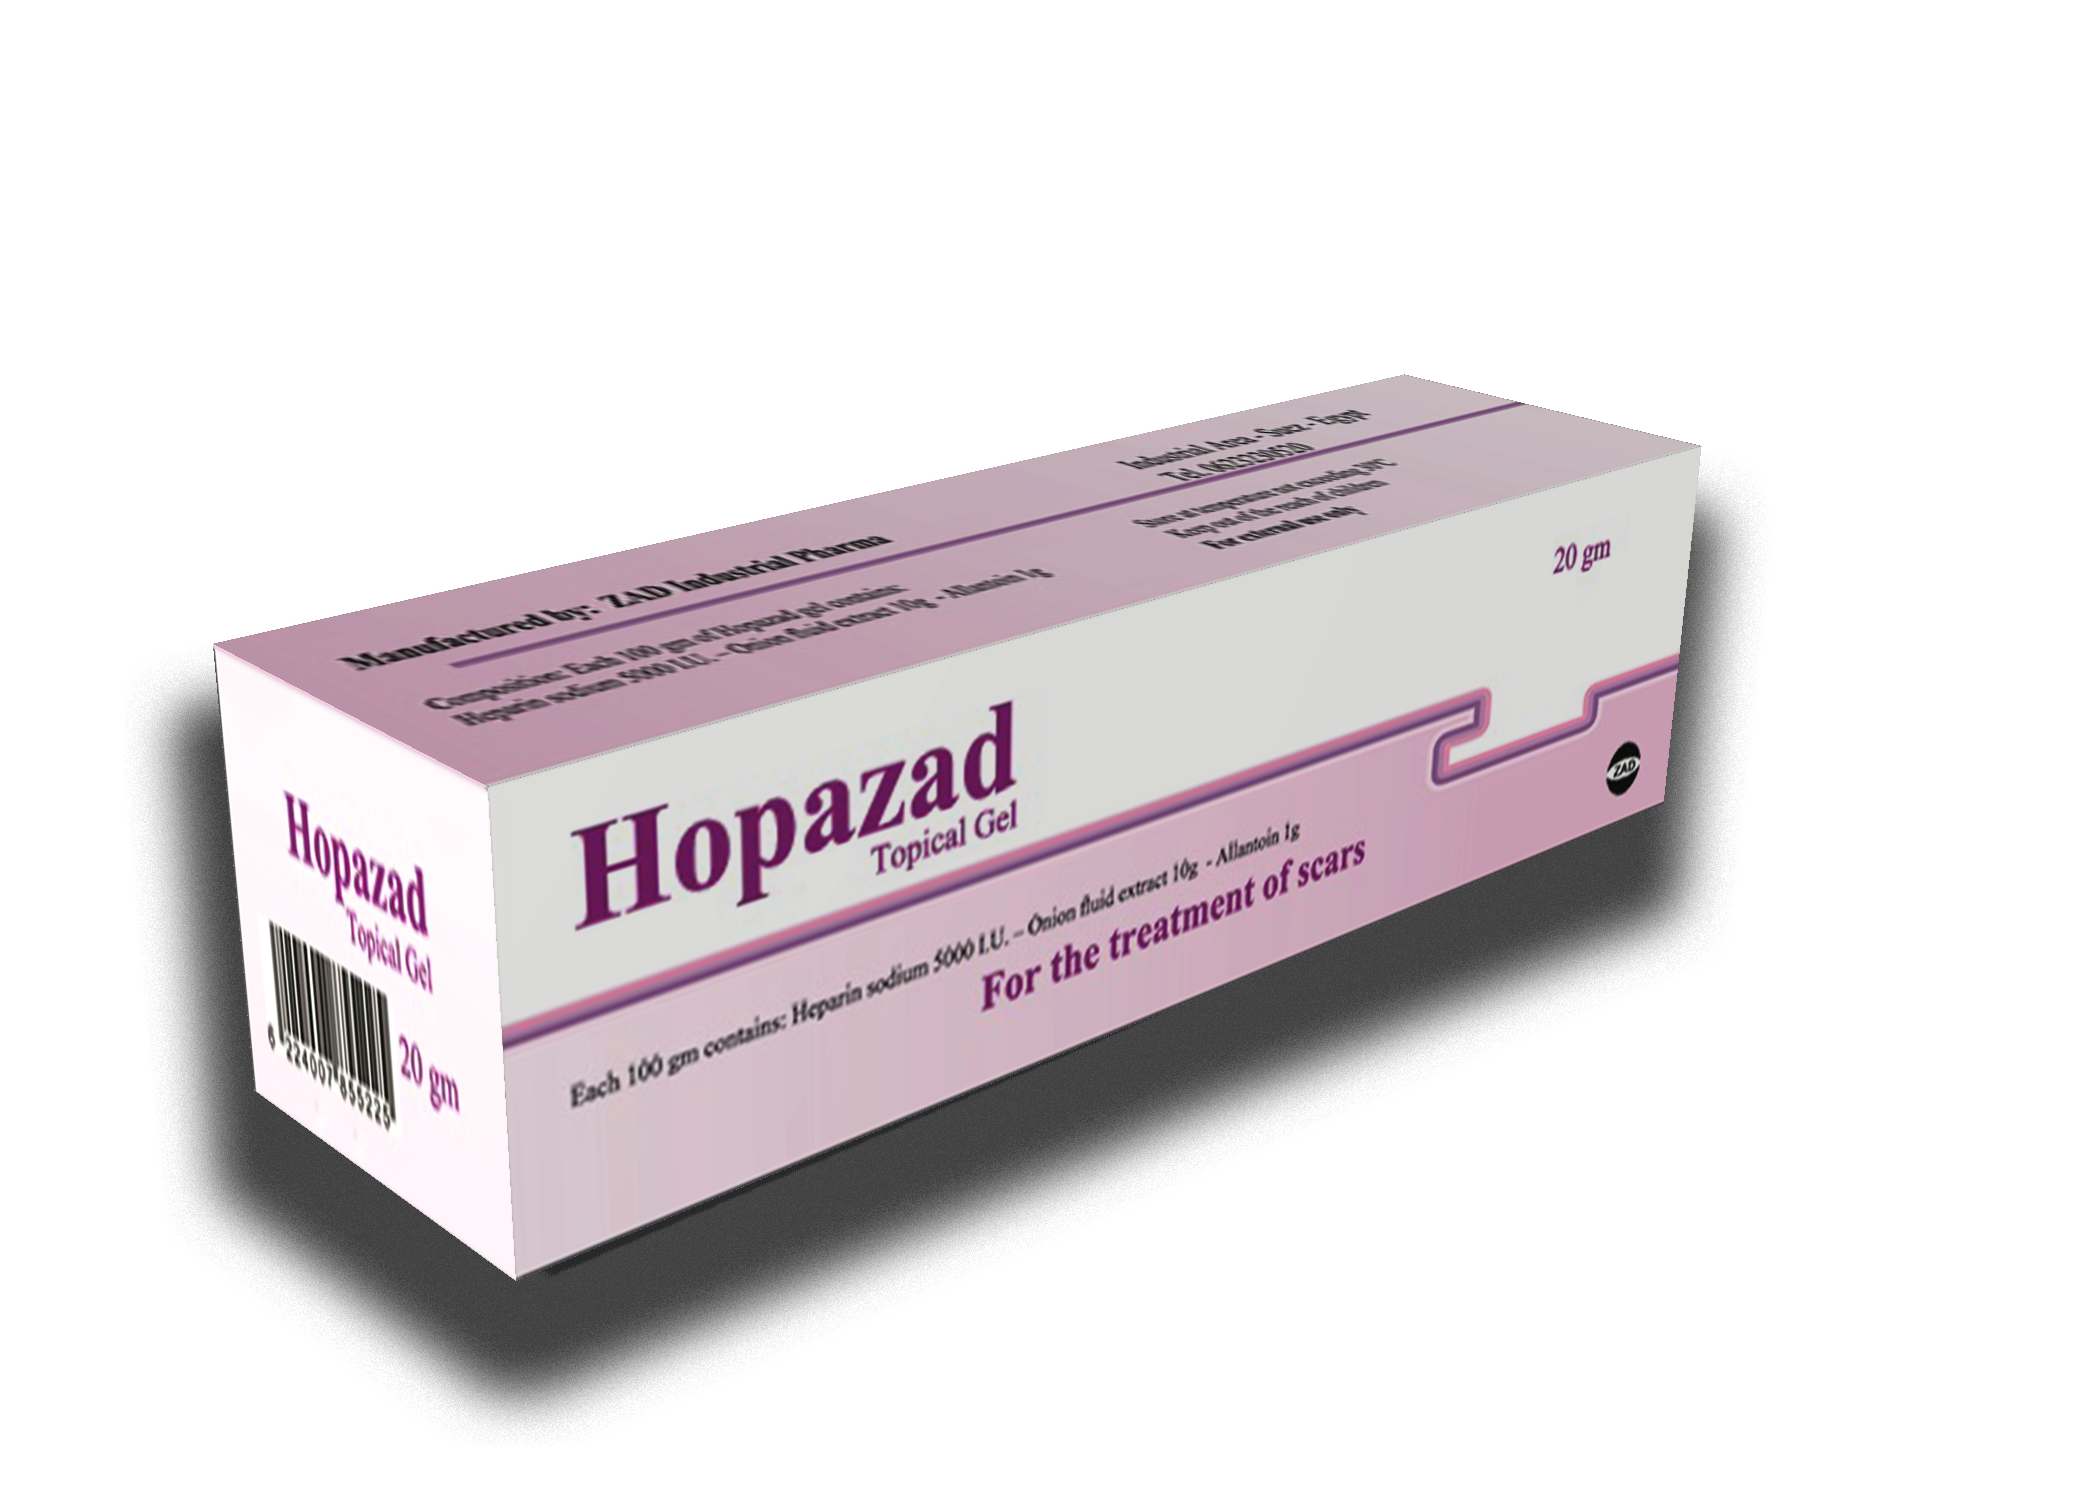 هوبازاد Hopazad جل لازالة آثار الحروق والجروح والندوب وترطيب تشققات الجلد